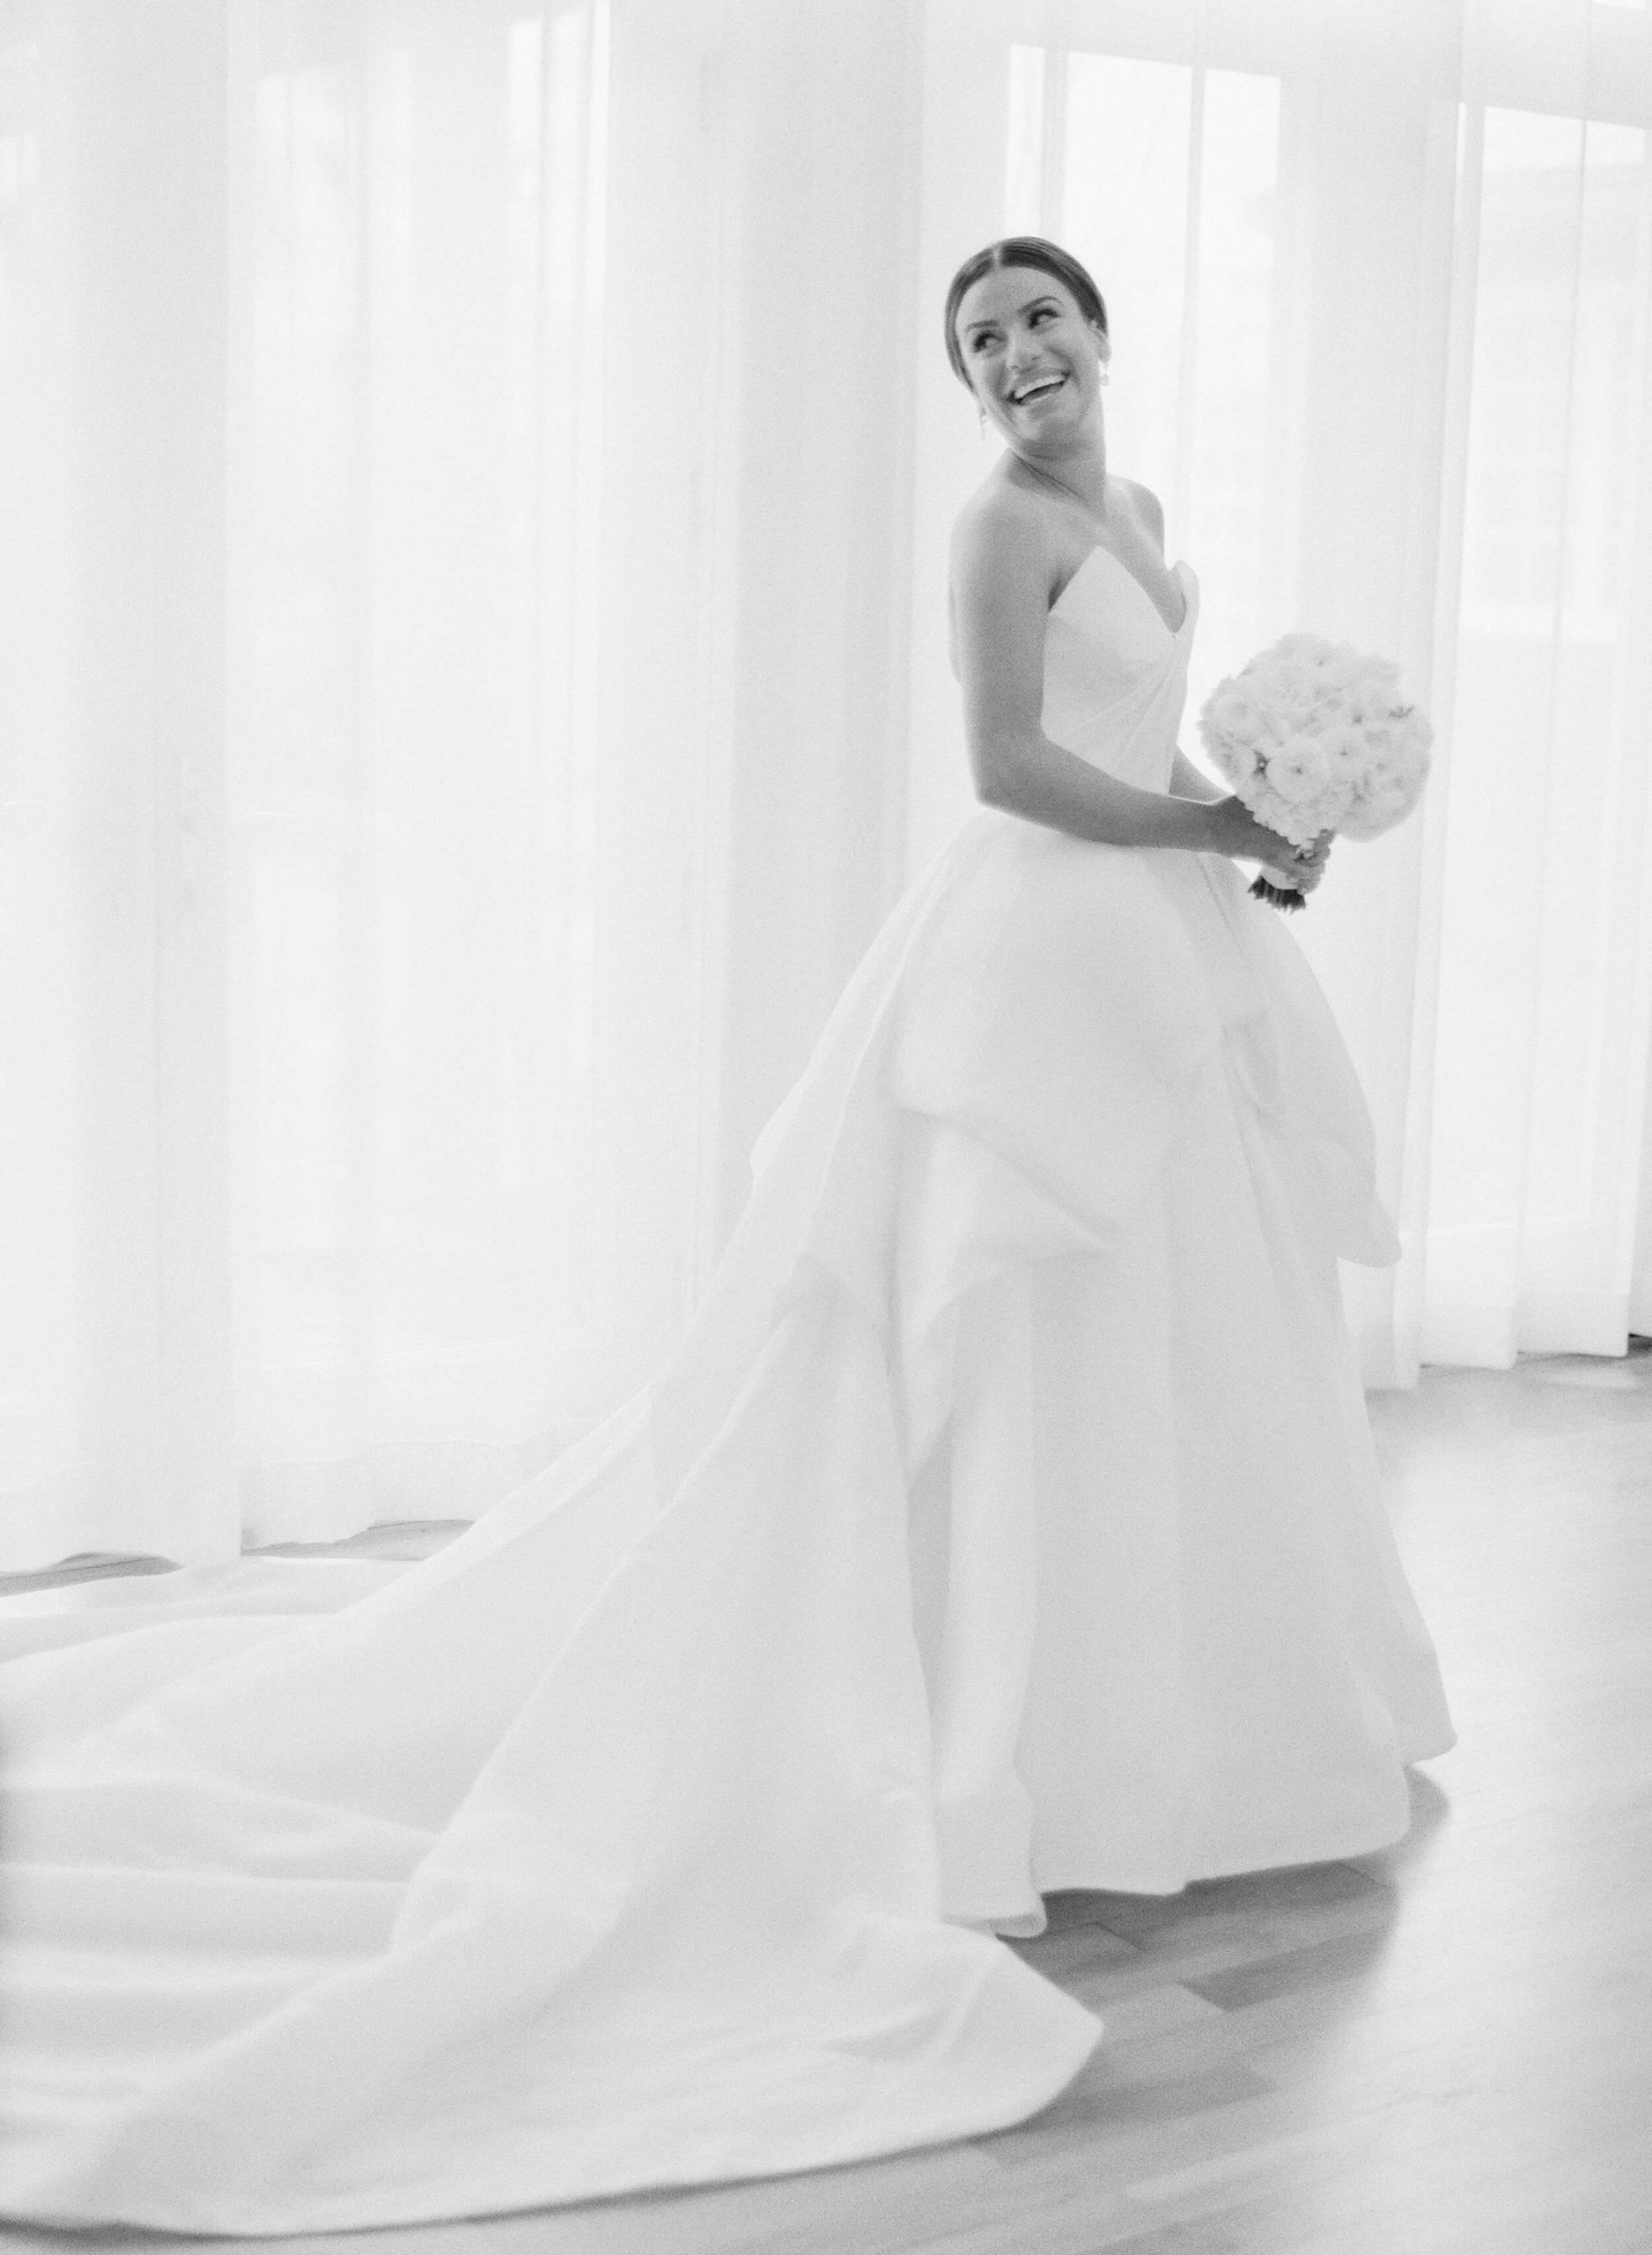 Lea Michelle bridal portrait in black and white film